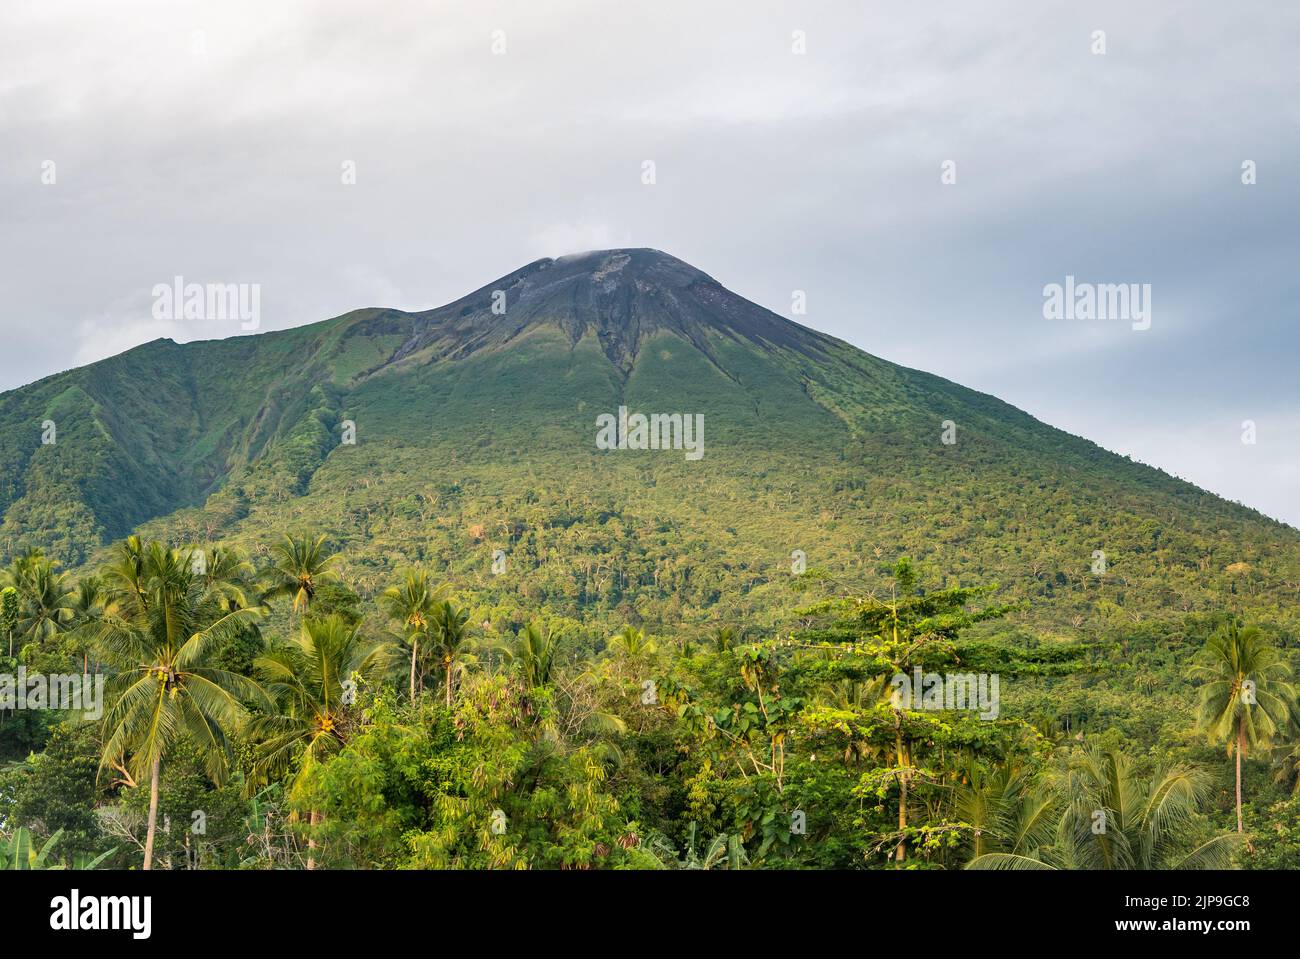 Le mont Gamalama est un volcan actif. Île Ternate, Indonésie. Banque D'Images